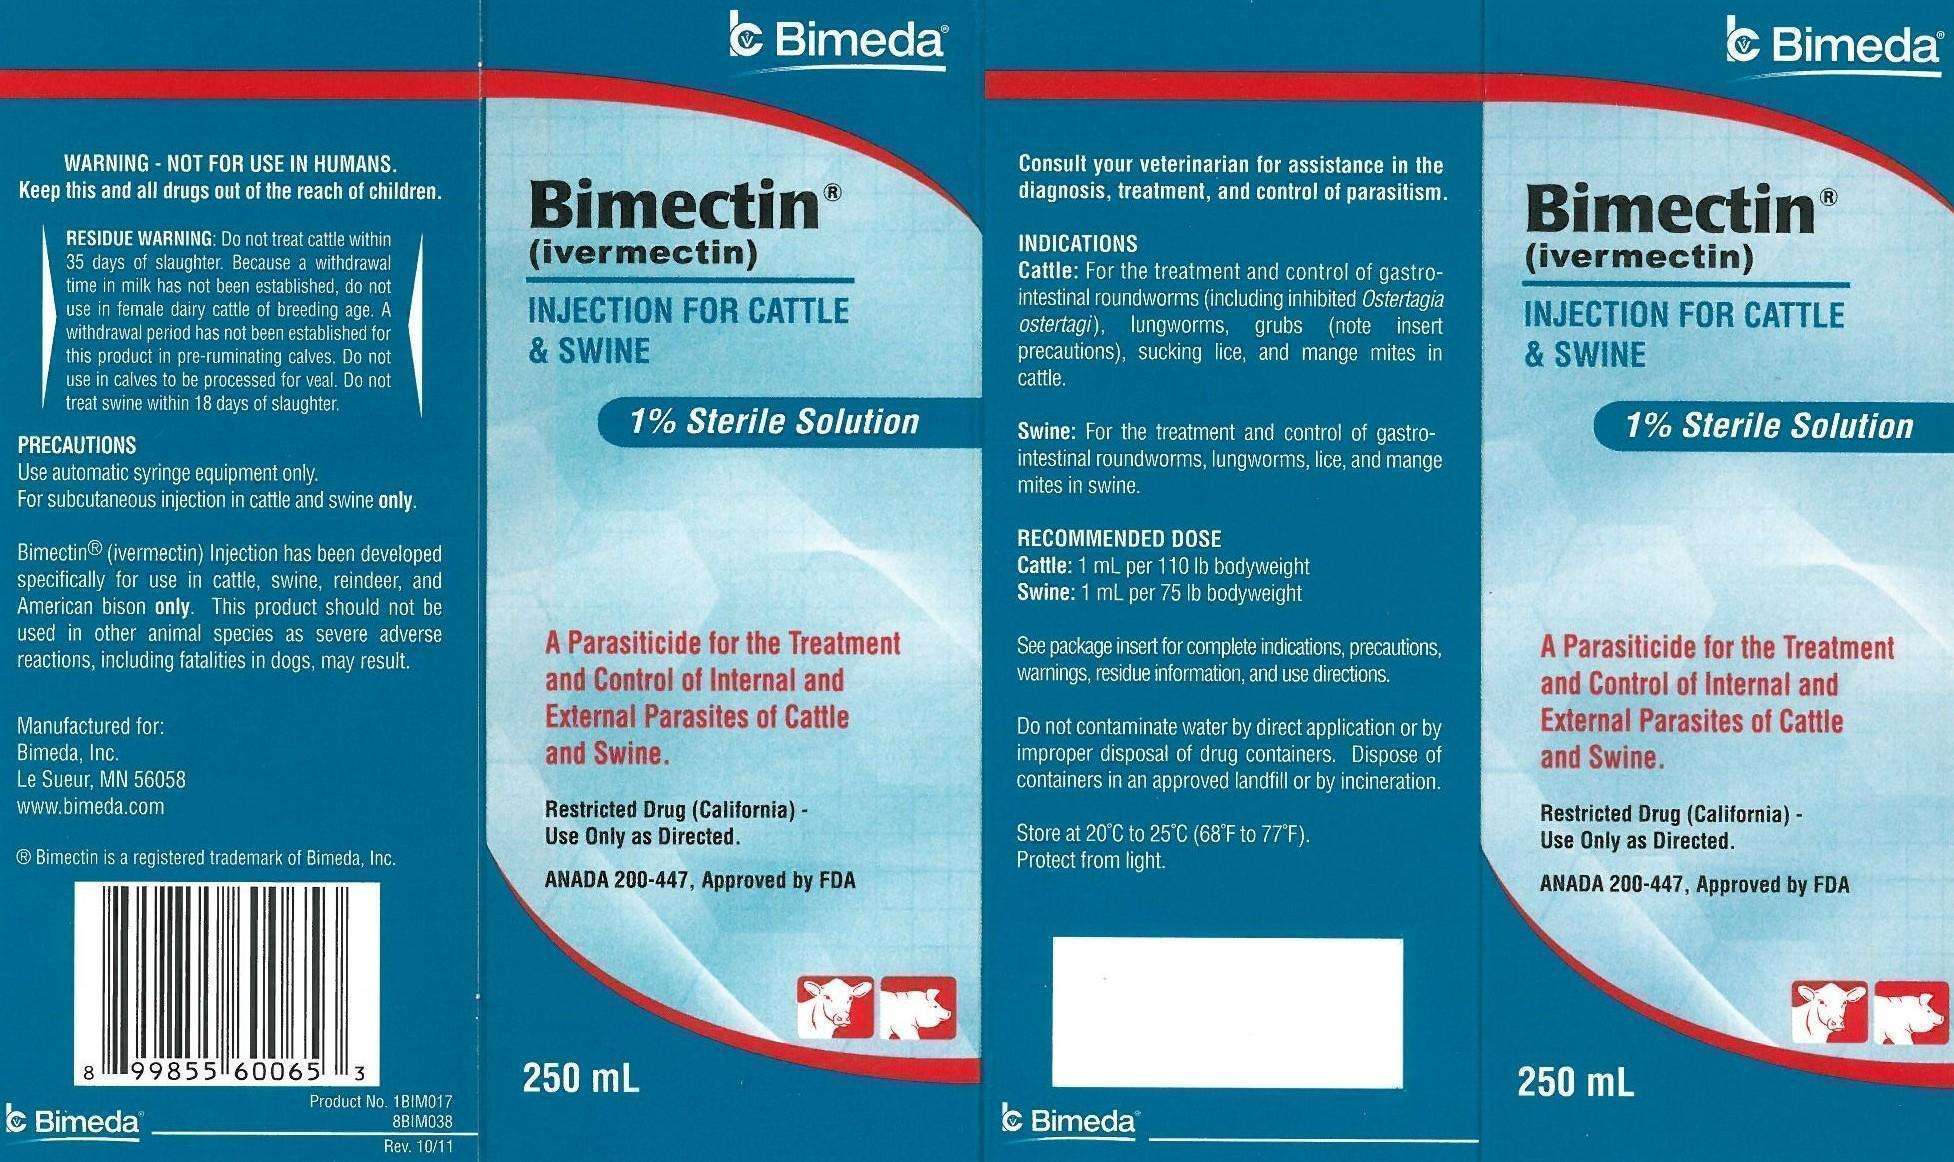 Bimectin